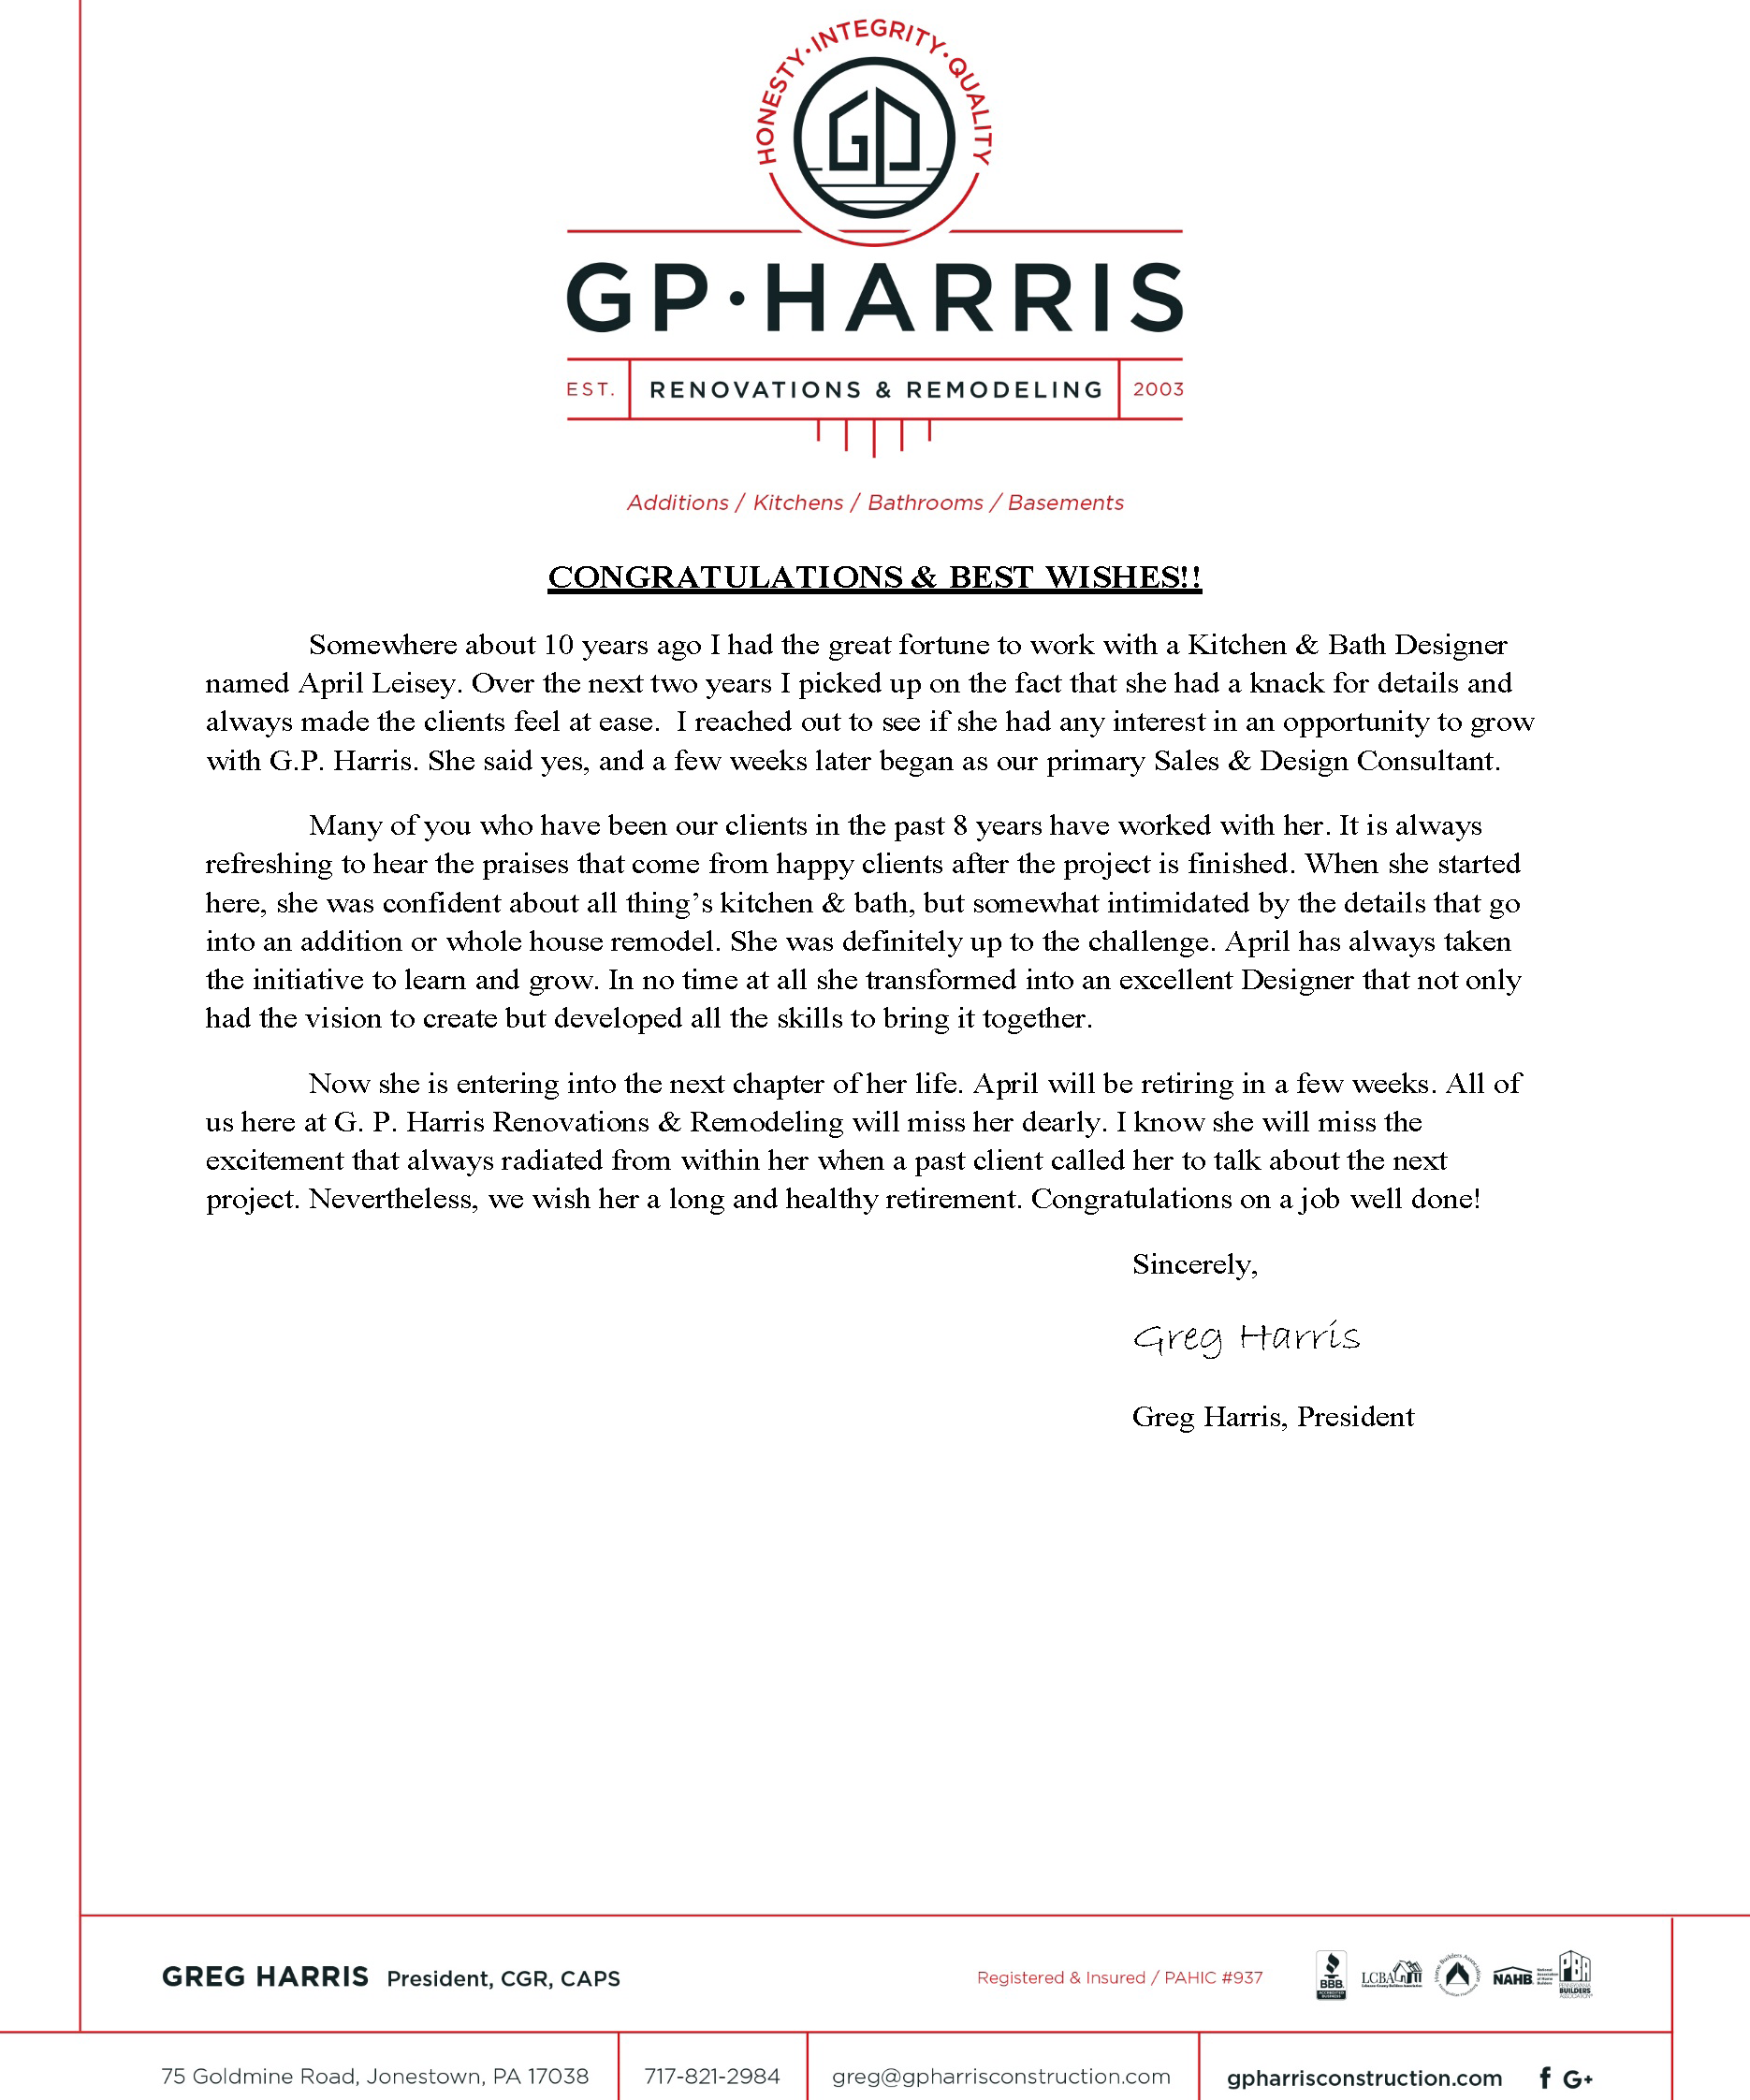 Letter from Greg Harris for April's retirement.